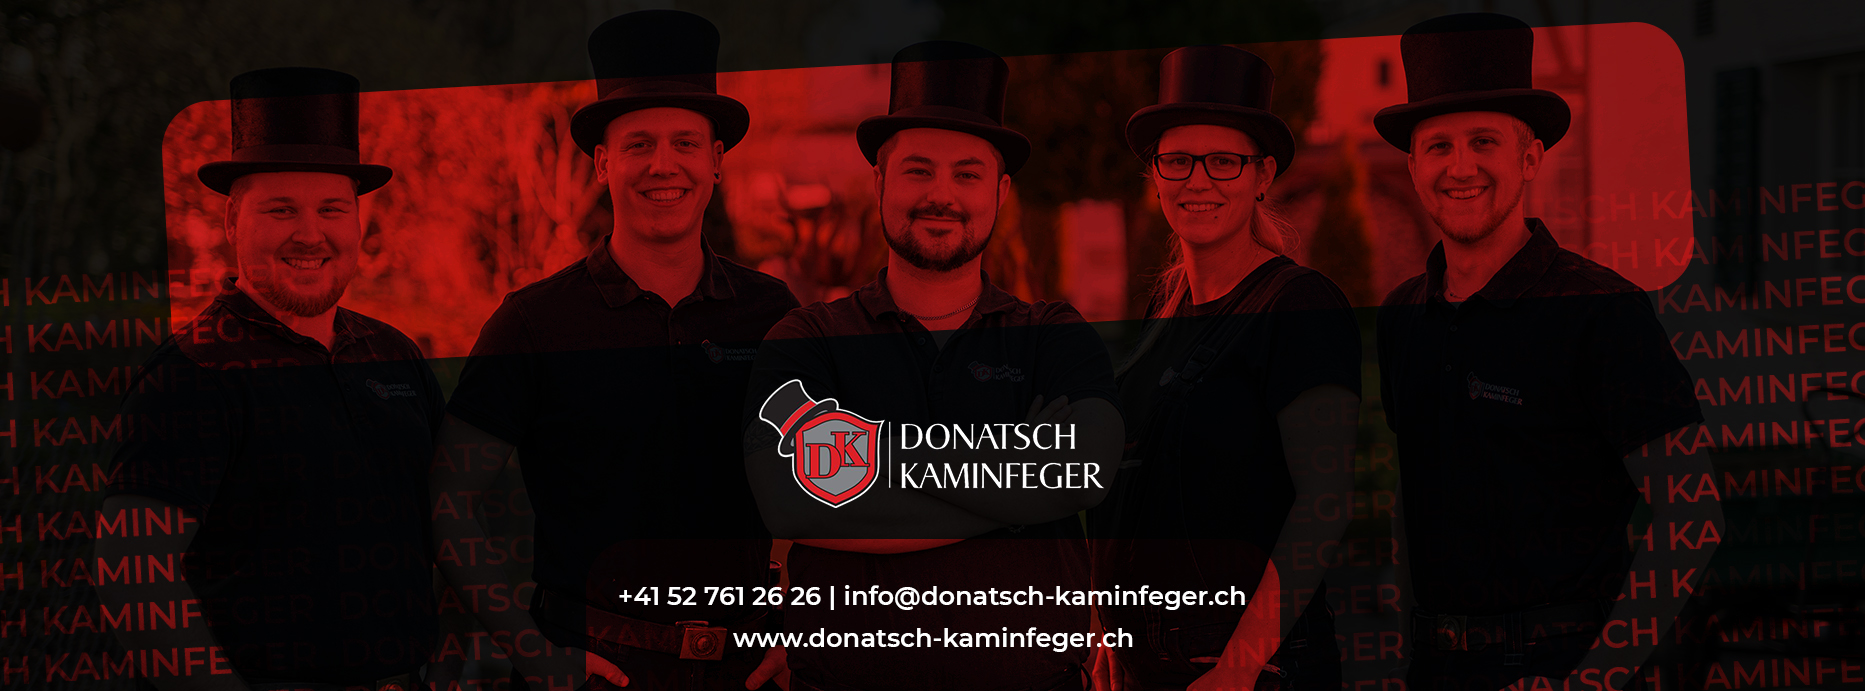 (c) Donatsch-kaminfeger.ch